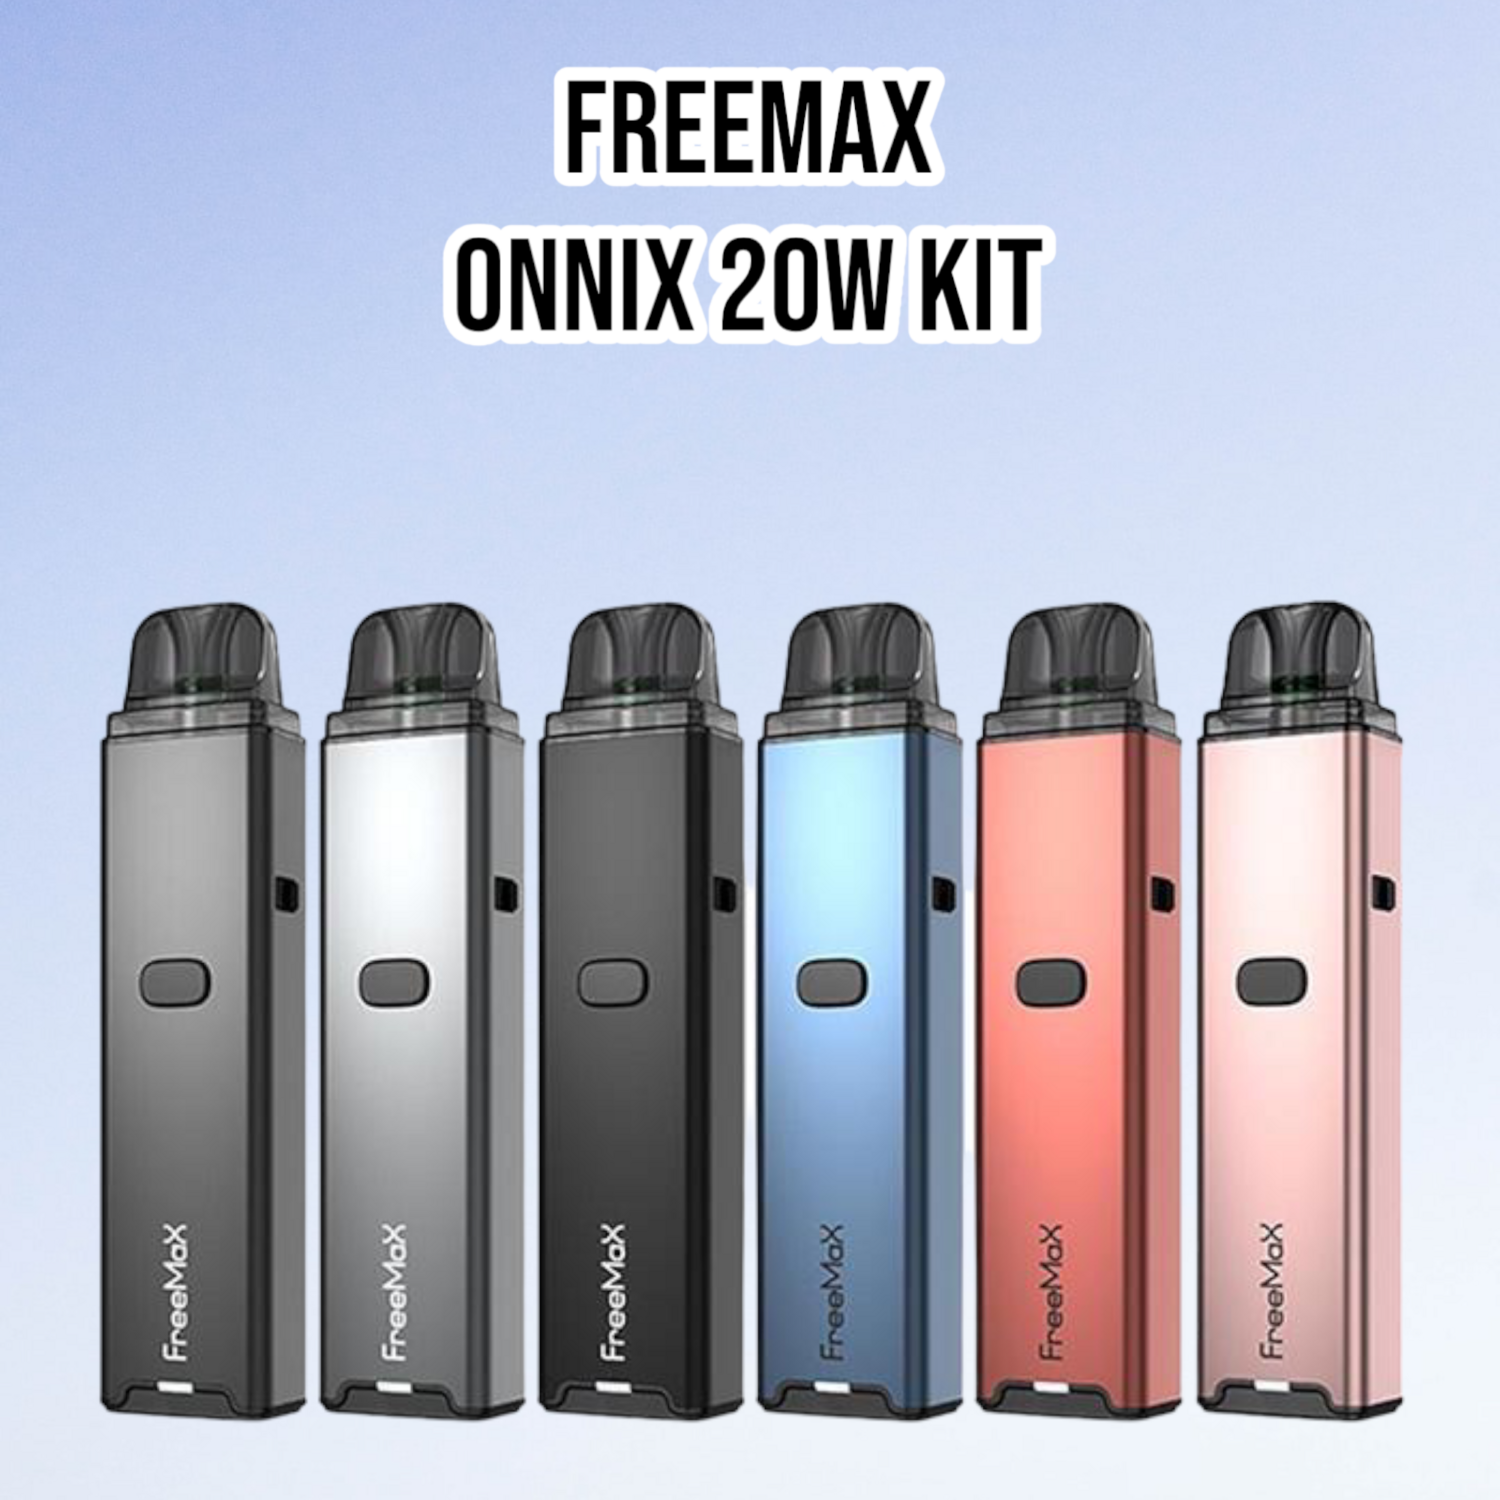 Freemax Onnix 20w Kit